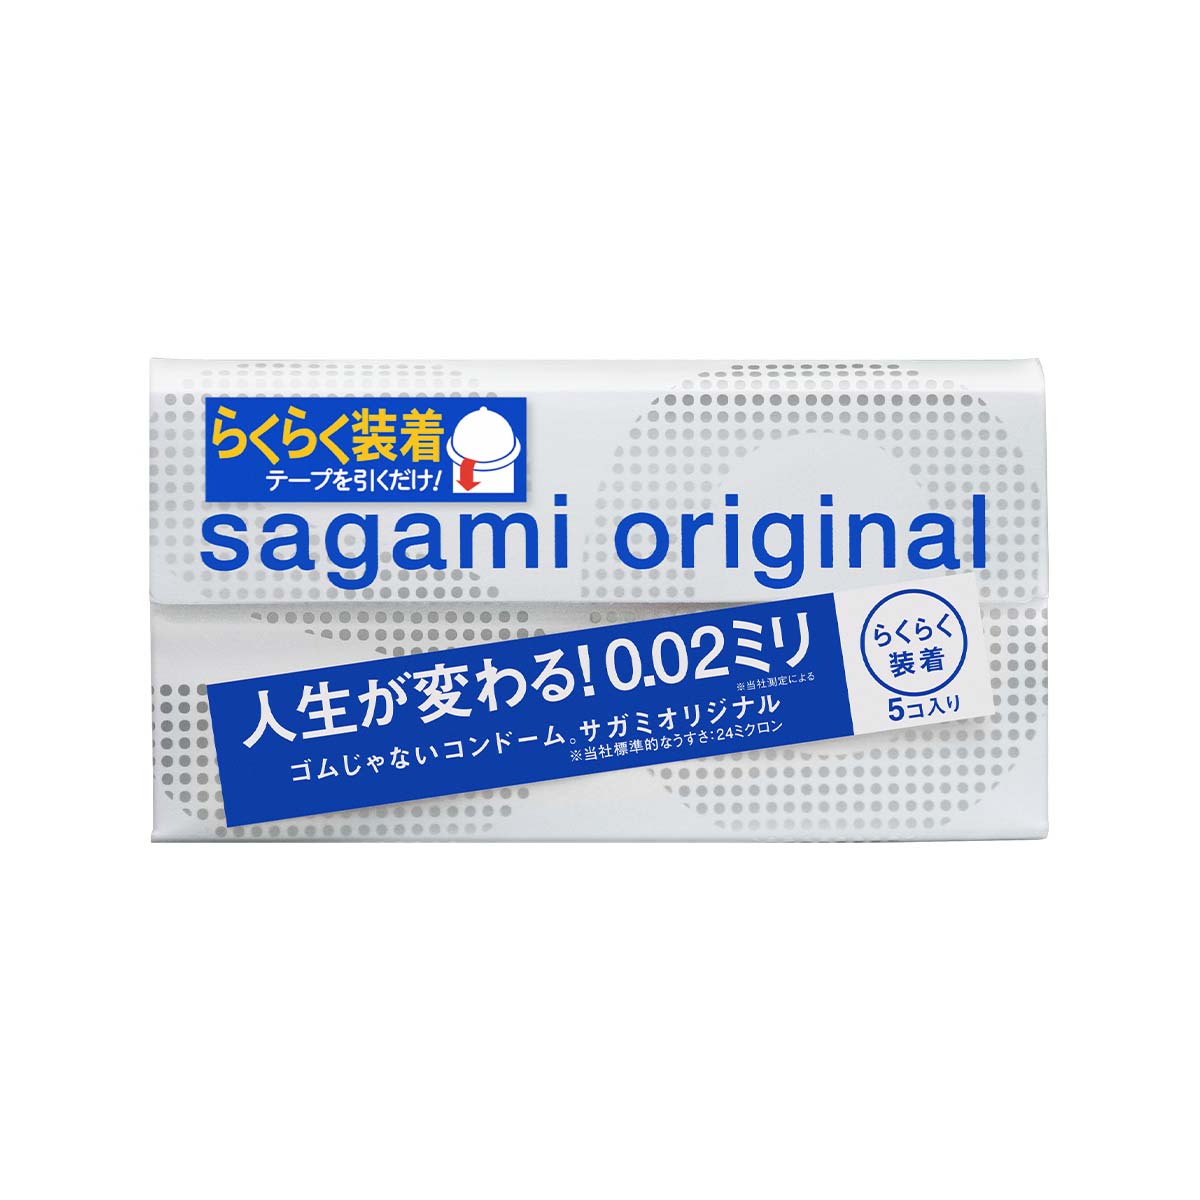 Sagami Original 0.02 Quick (2nd generation) 5's Pack PU Condom-p_2